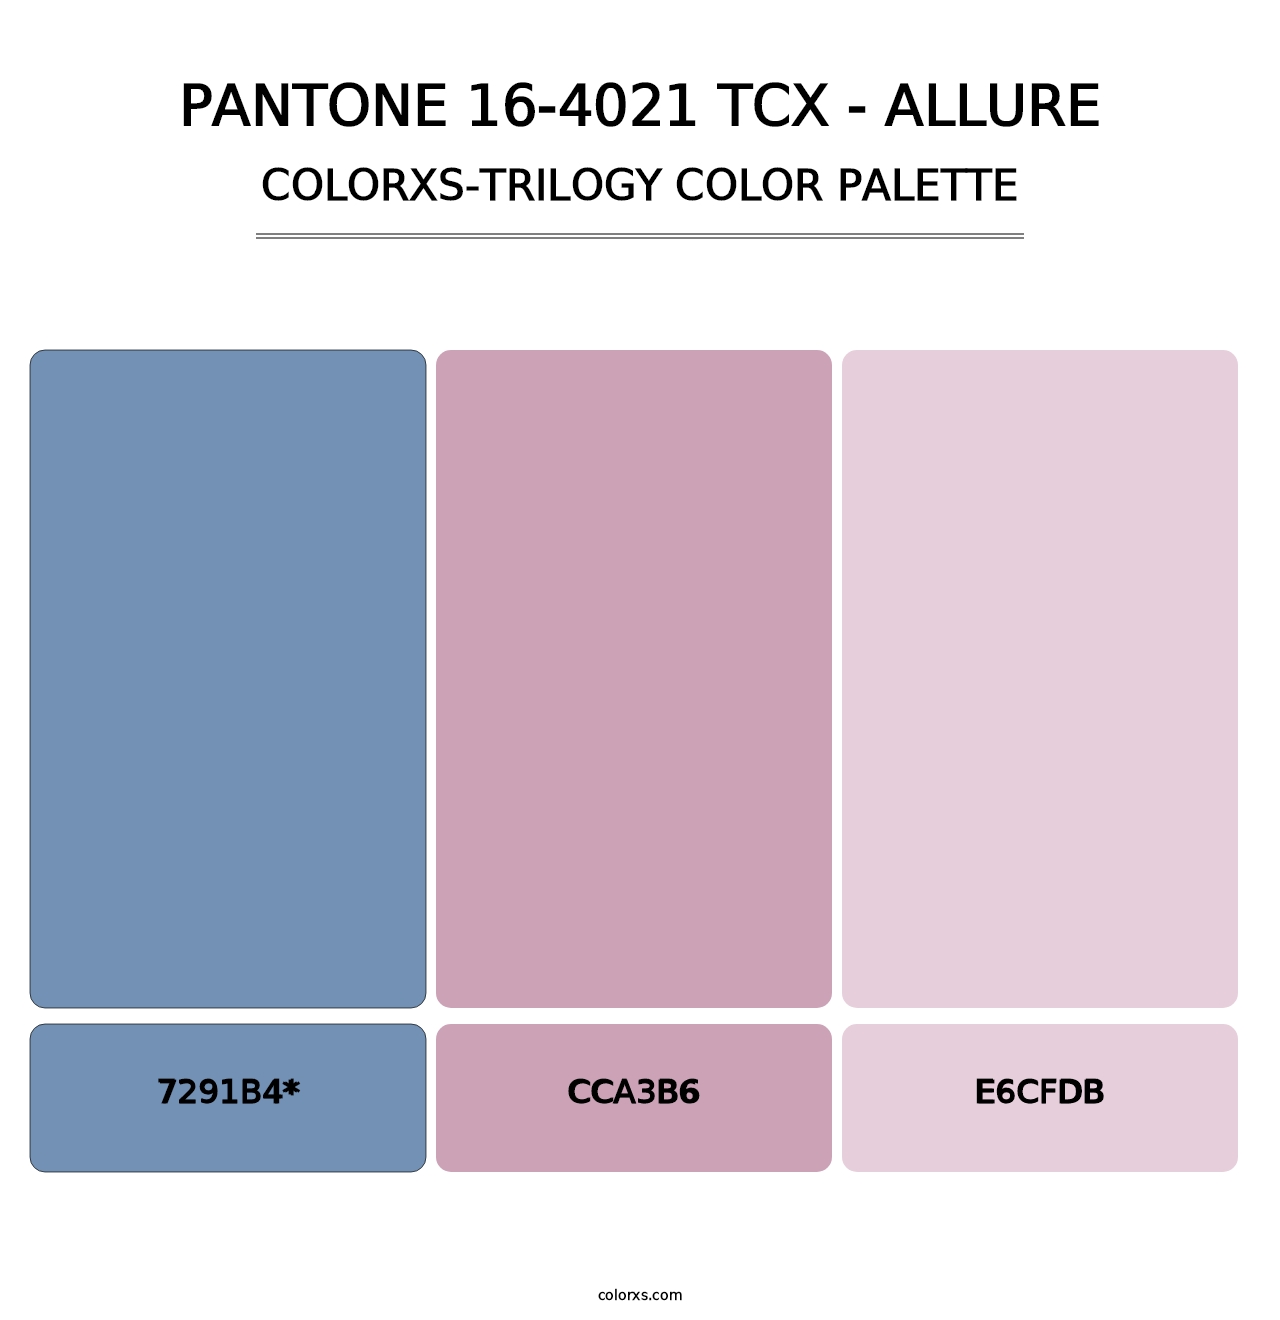 PANTONE 16-4021 TCX - Allure - Colorxs Trilogy Palette